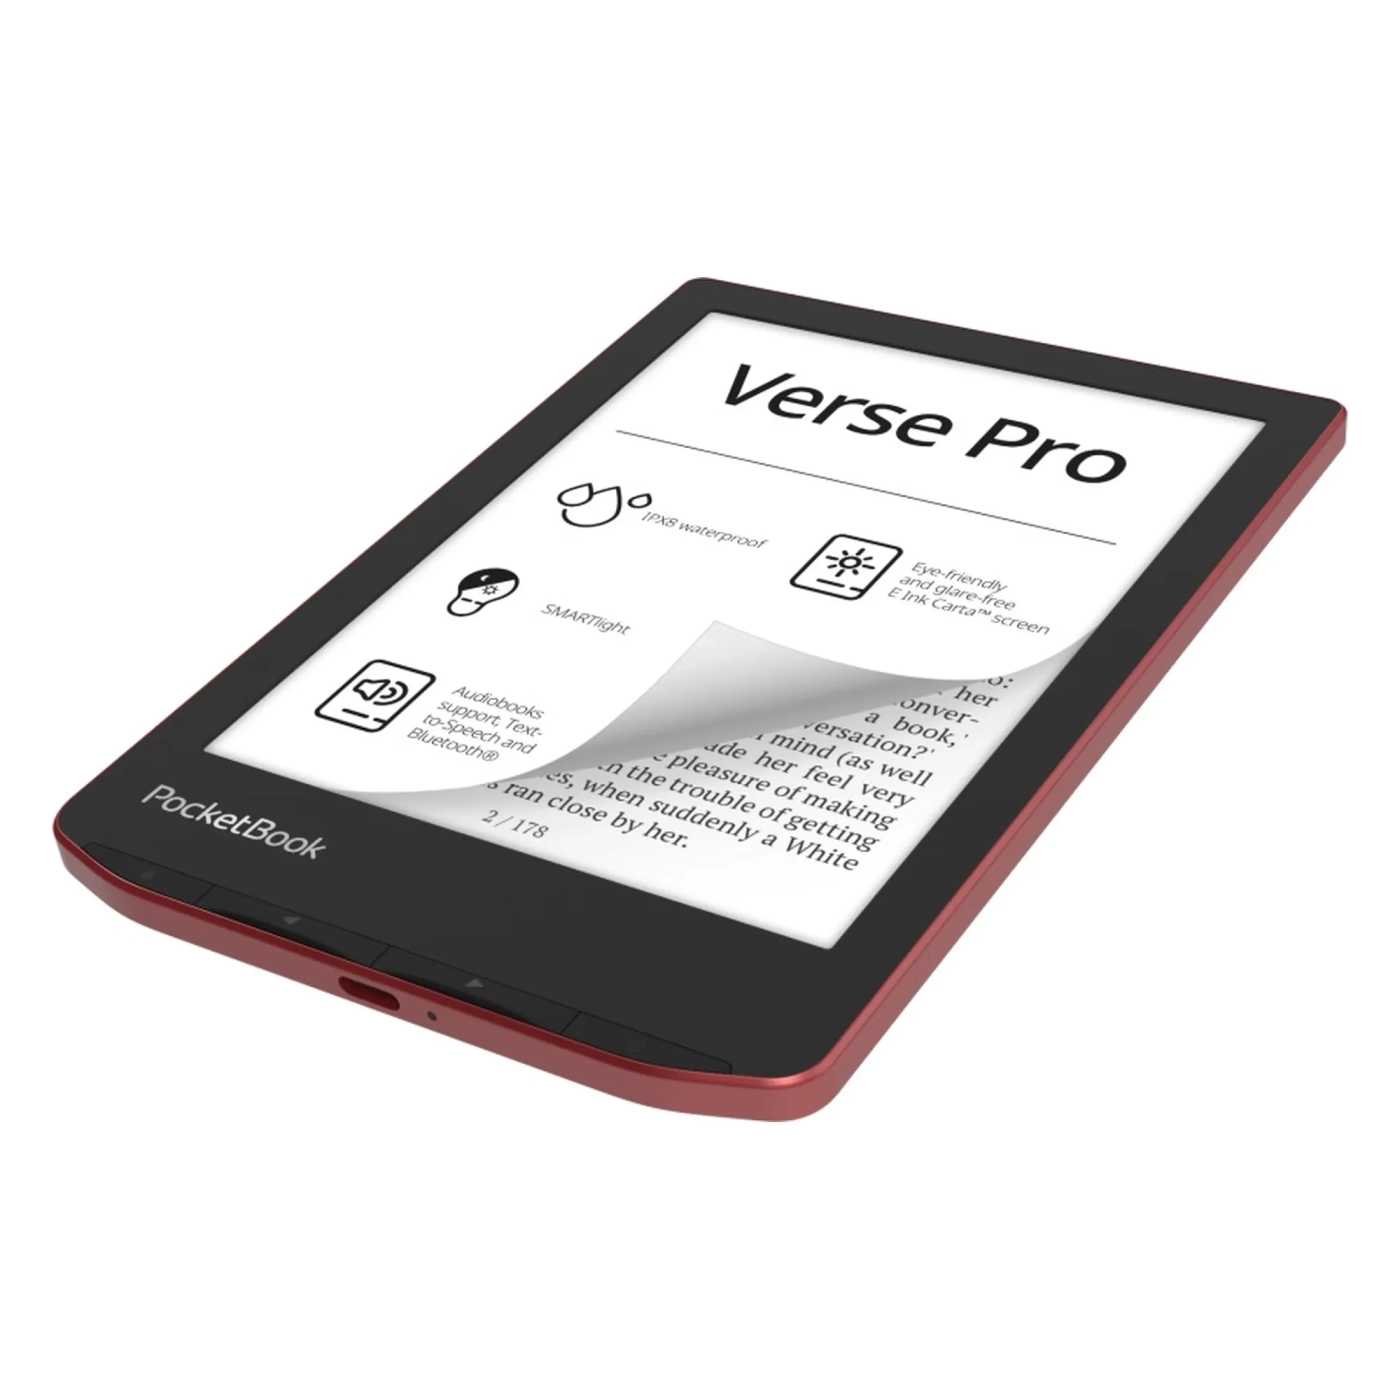 Купить Электронная книга PocketBook 634 Verse Pro, Passion Red - фото 3